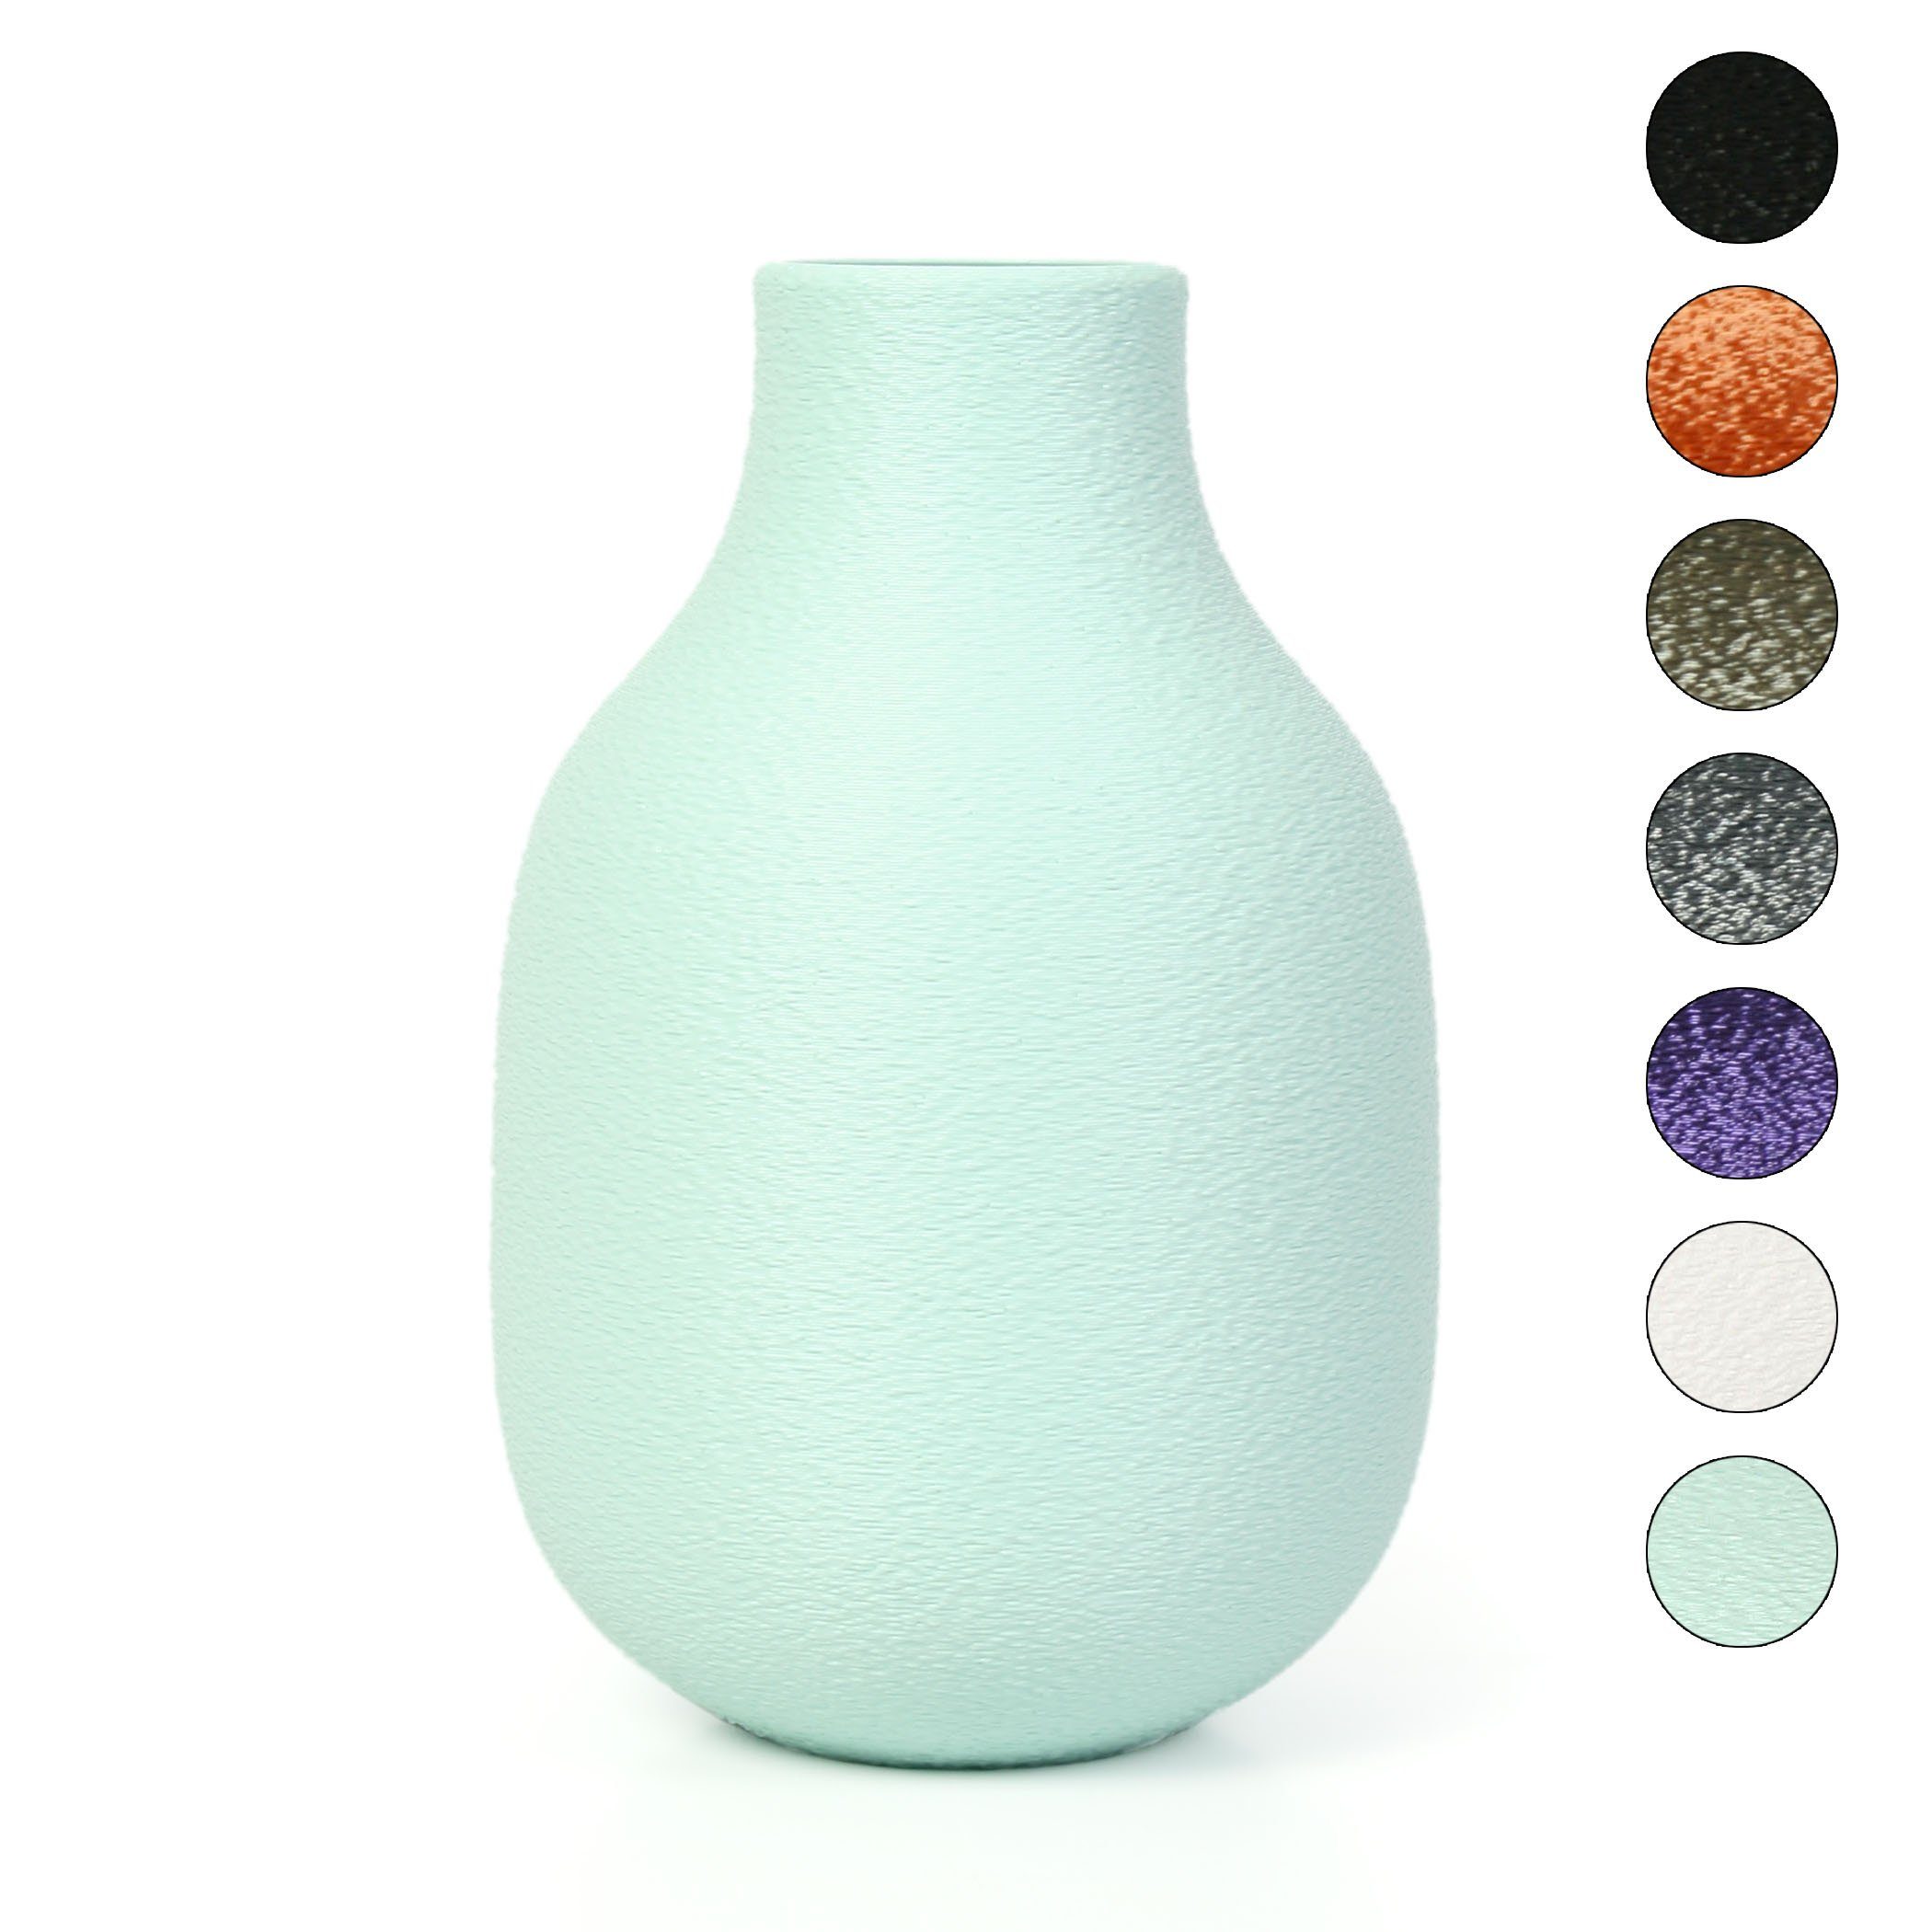 Kreative Feder Dekovase Designer Vase – Dekorative Blumenvase aus Bio-Kunststoff, aus nachwachsenden Rohstoffen; wasserdicht & bruchsicher Water Green